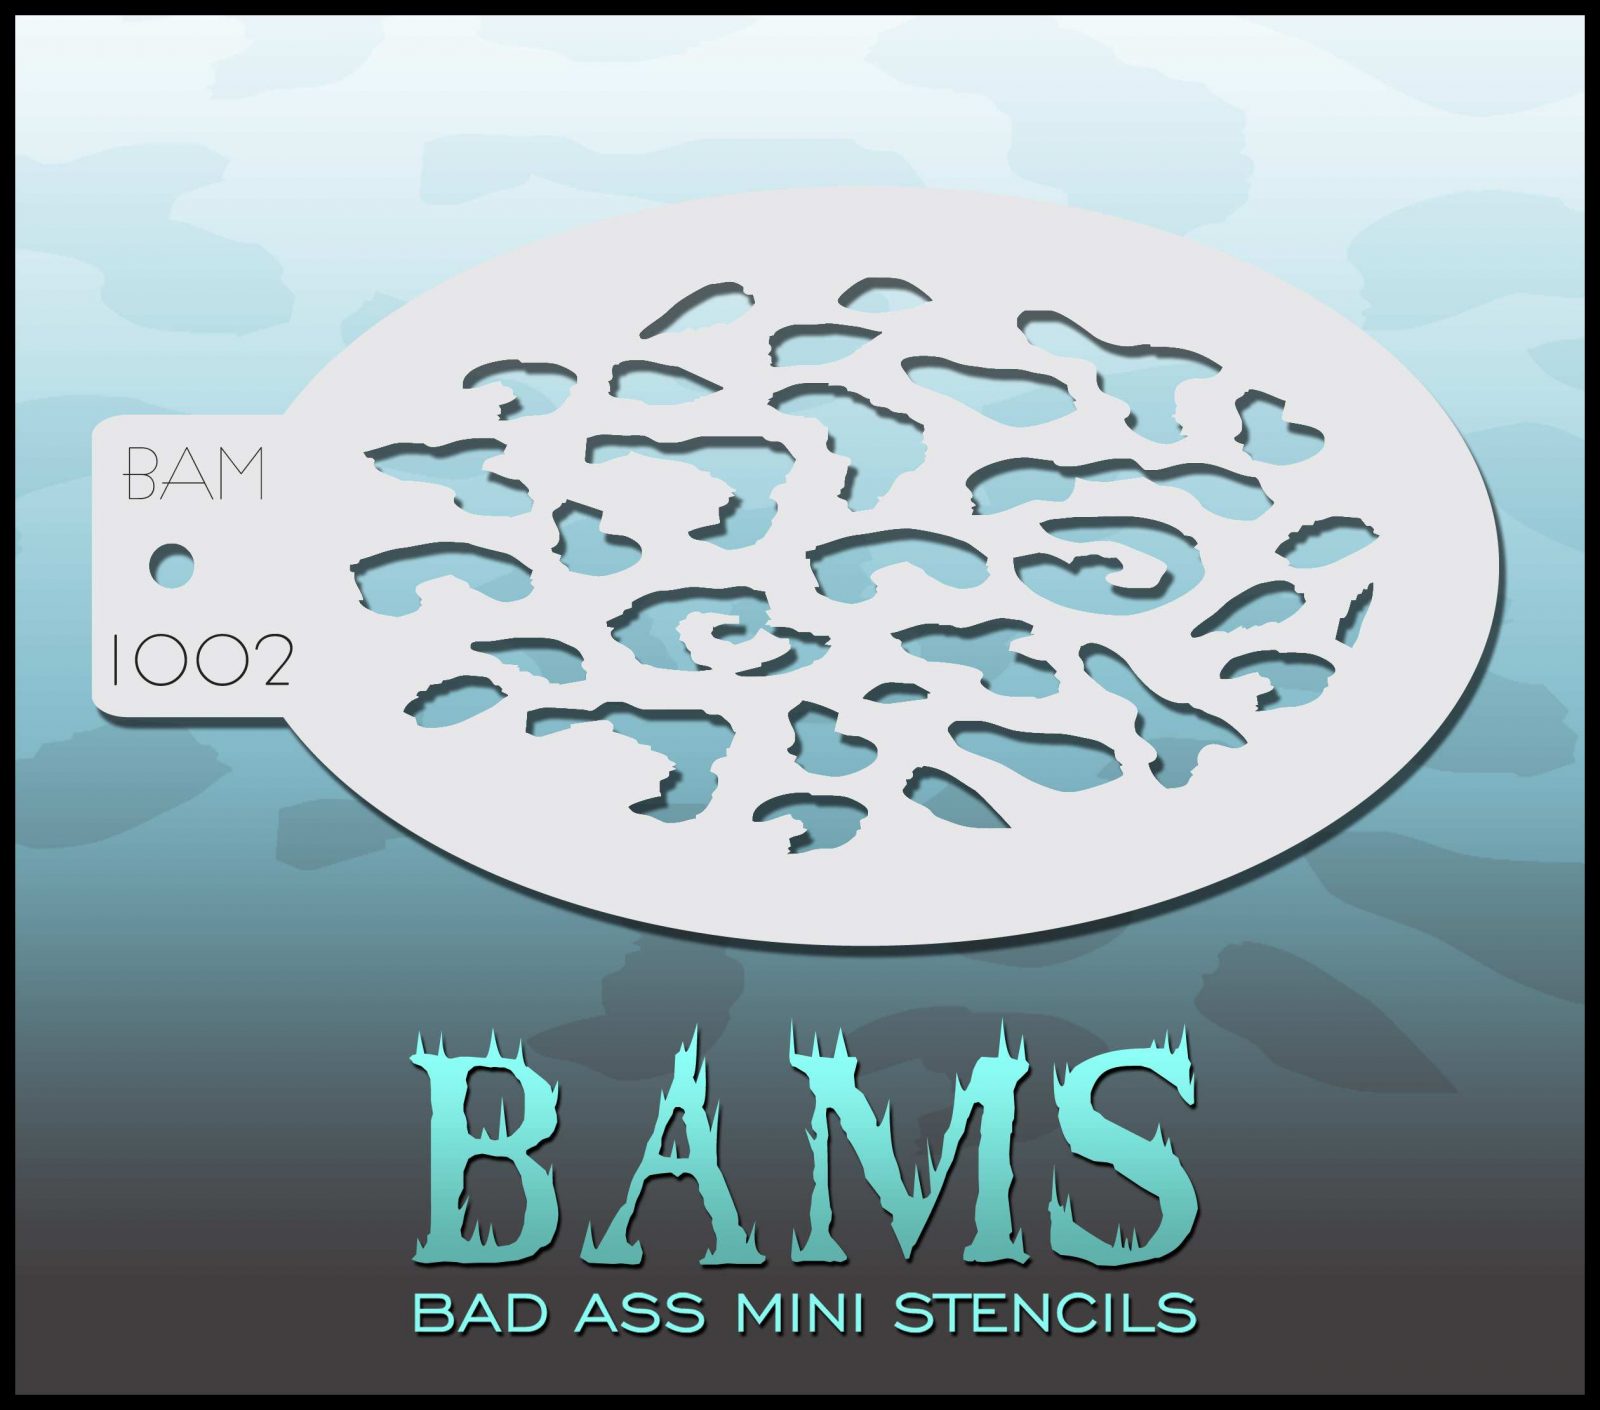 Bad Ass Stencils - BAM 1002 - Stencil Leopard / Cheetah print